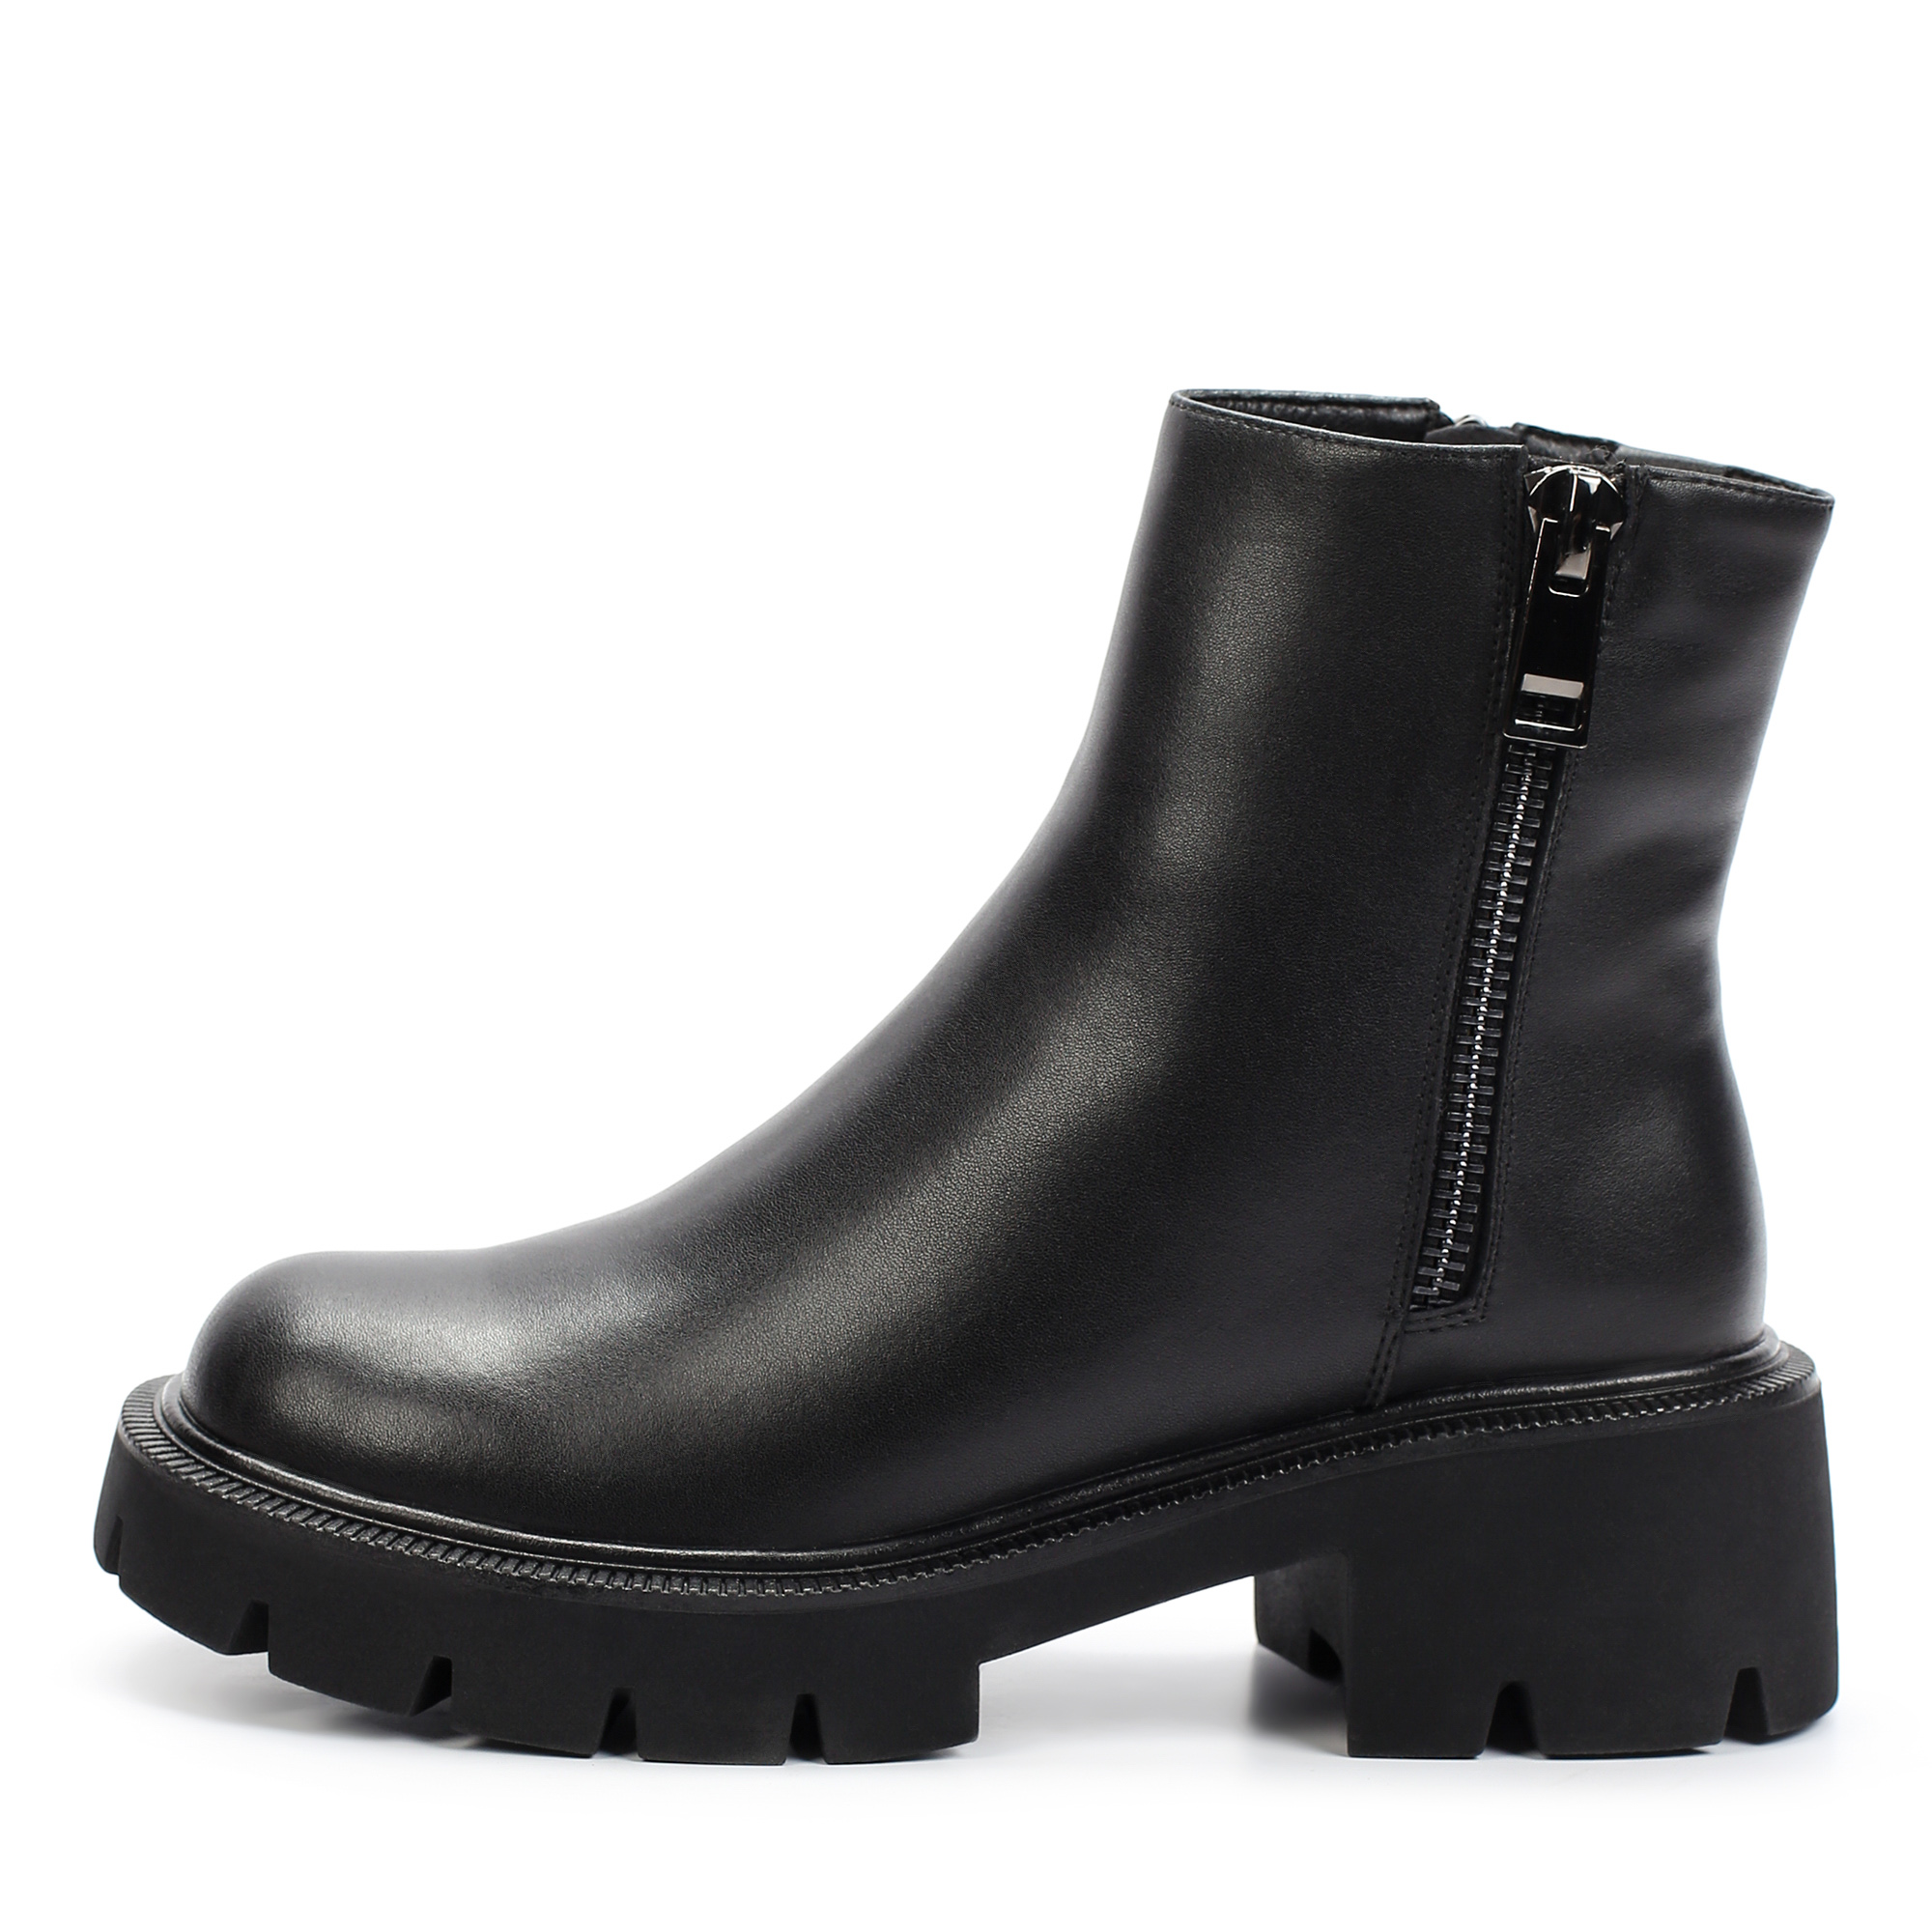 Ботинки Thomas Munz 195-017A-5602, цвет черный, размер 37